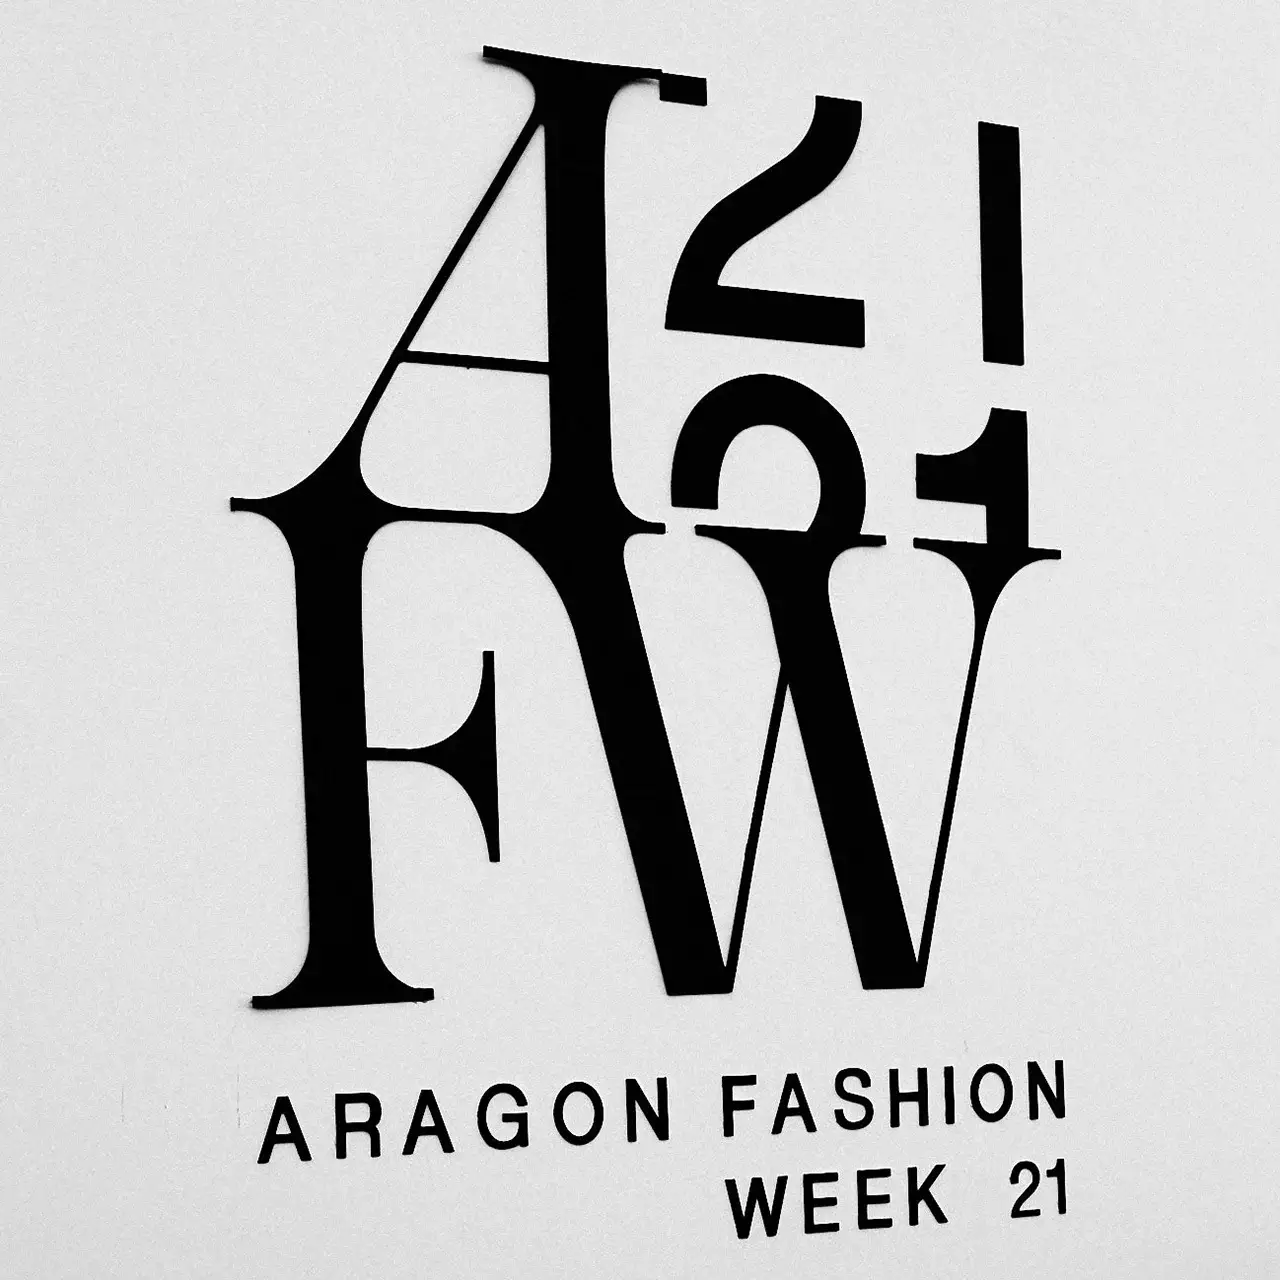 Fotografo de eventos de moda y tendencias. Semana de la moda en Aragon 2021 - AFW